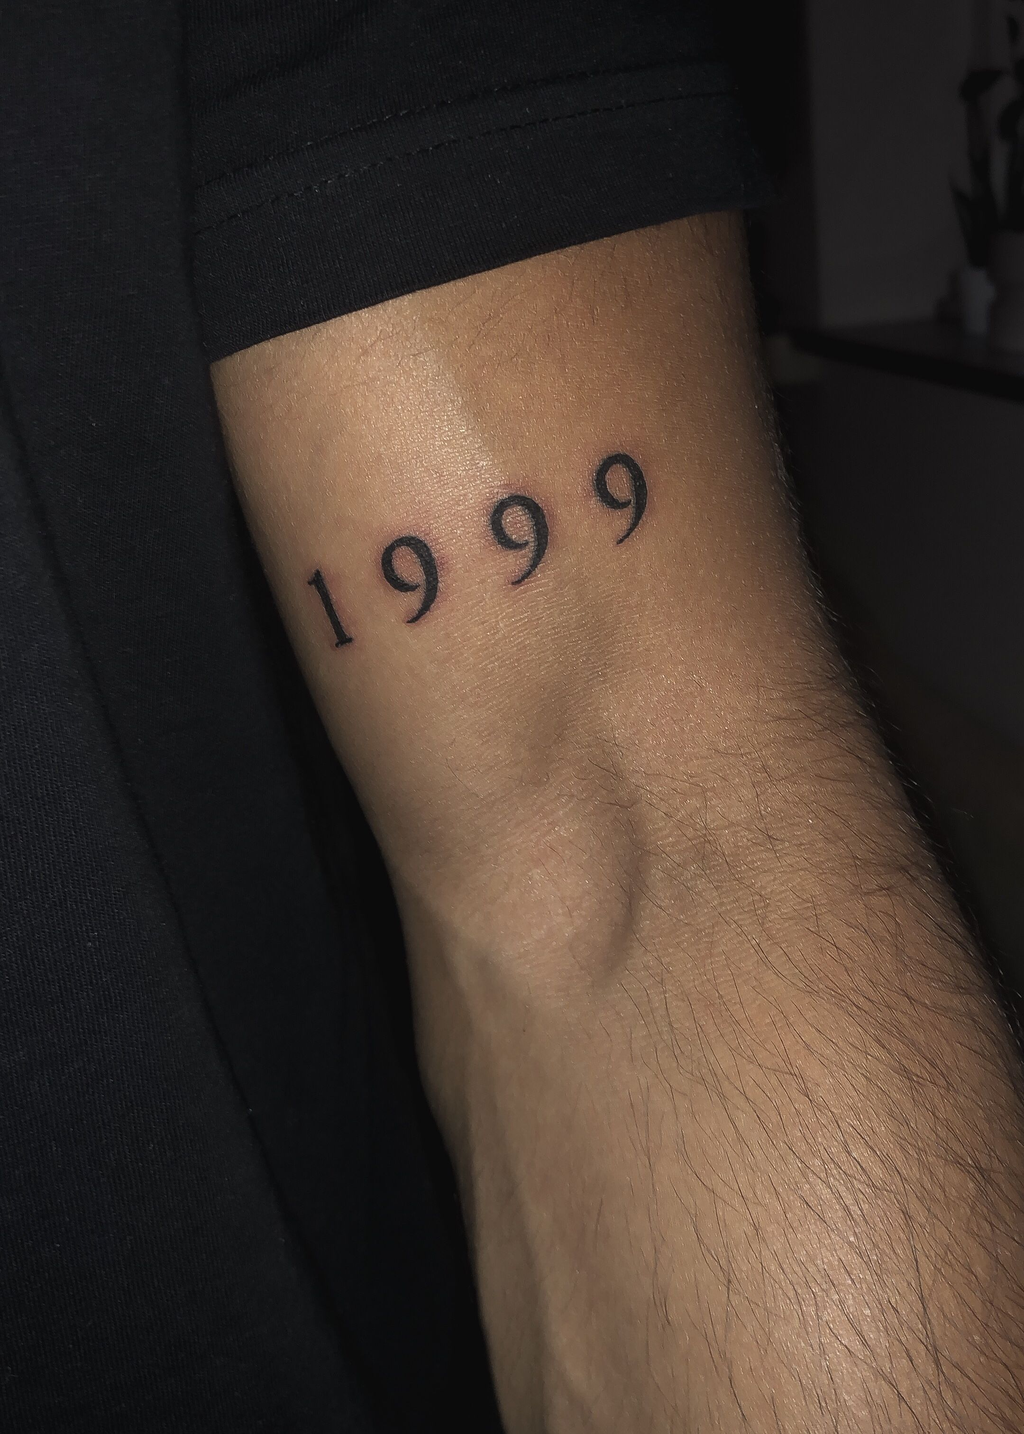 ¿Qué significa el tatuaje de 1999? - 19 - enero 22, 2023